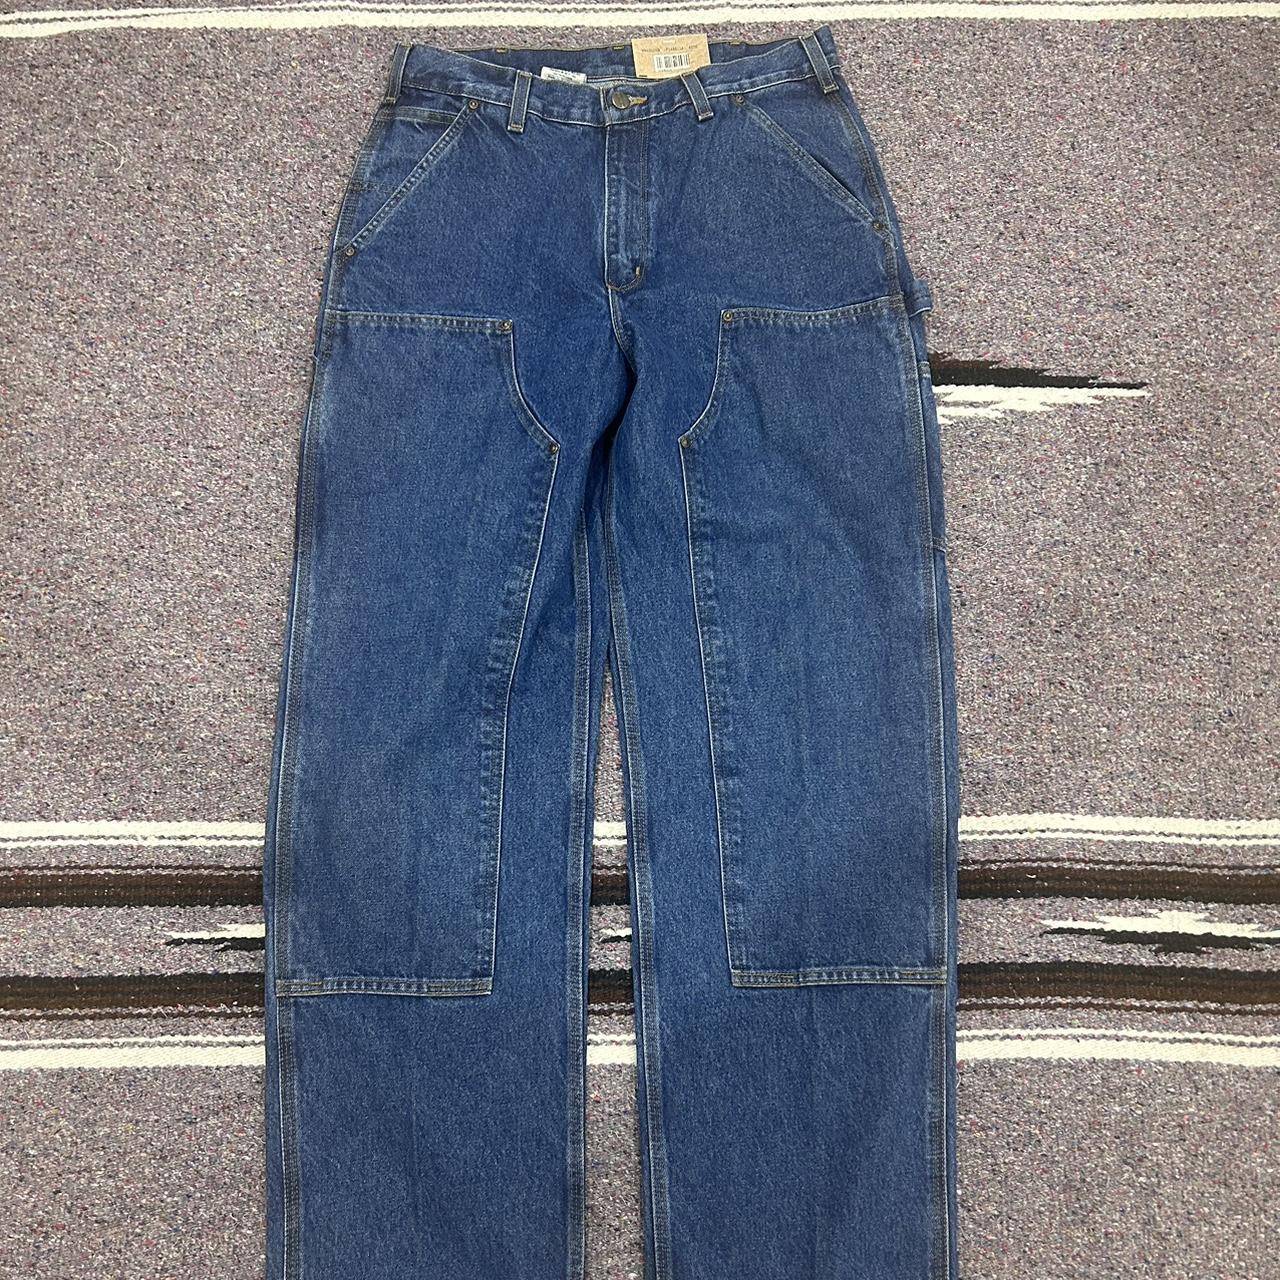 Vintage Carhartt dead stock double knee jeans in... - Depop